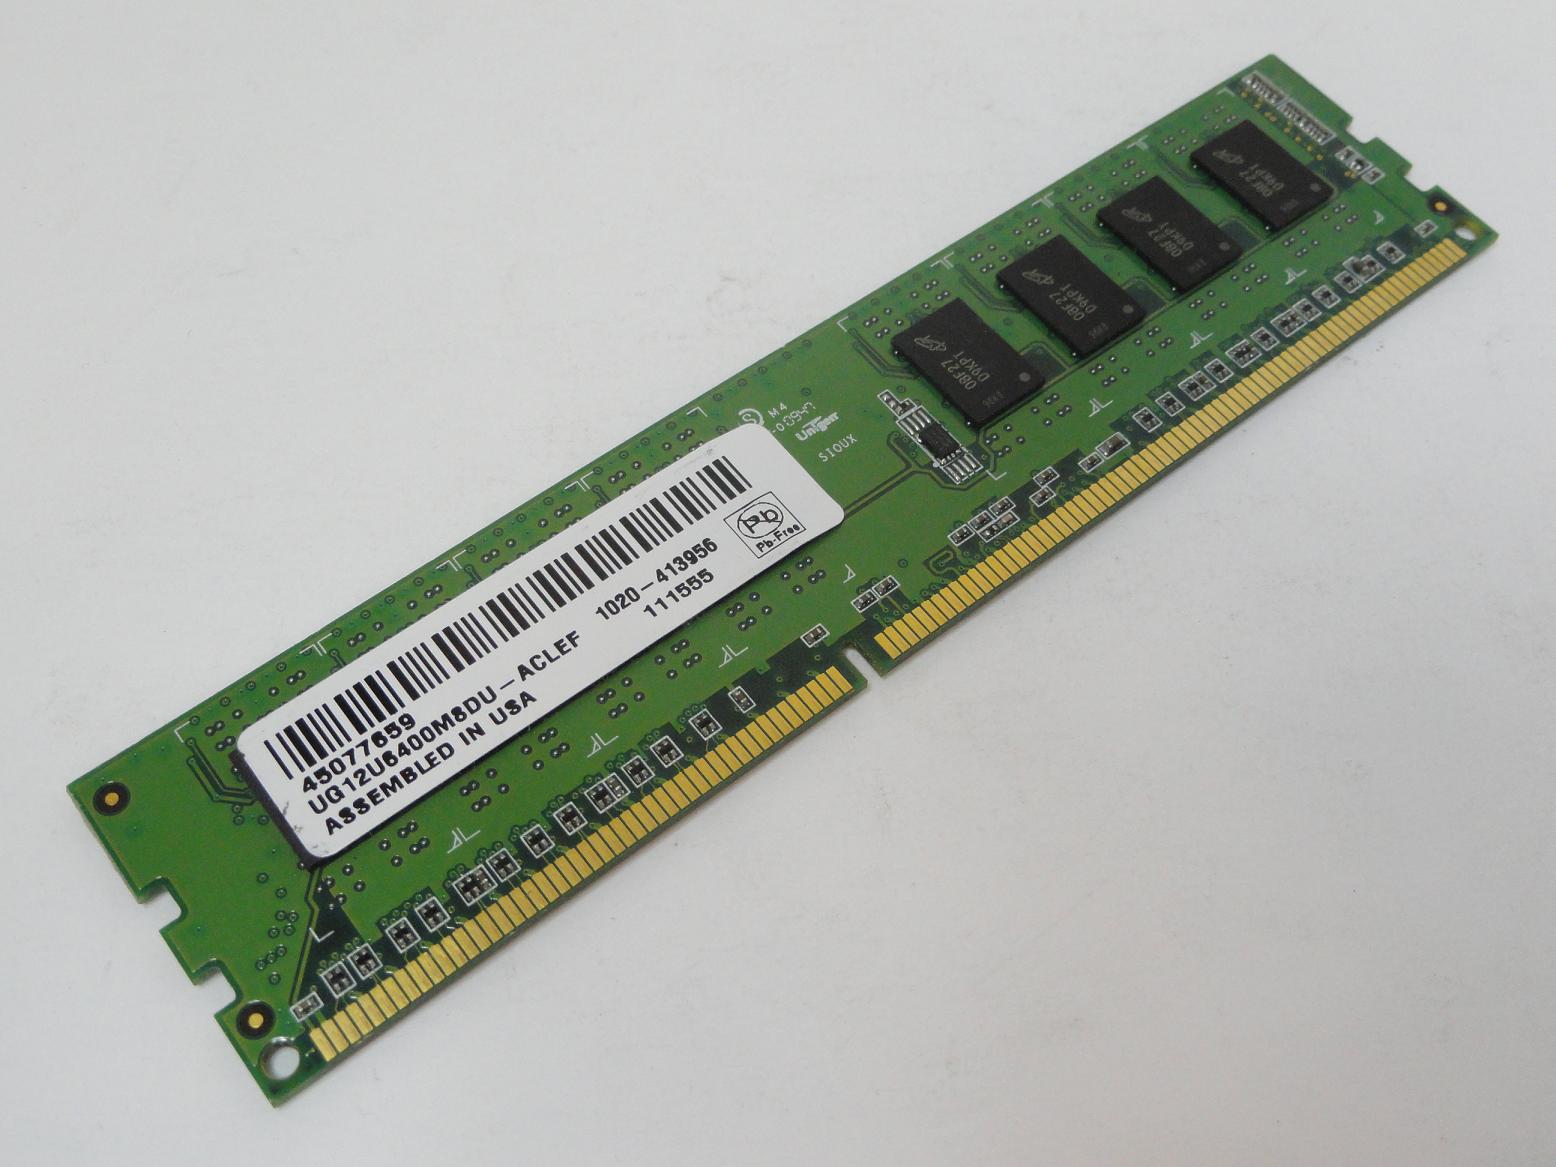 Unigen 1GB PC3-10600 DDR3-1333MHz DIMM RAM ( UG12U6400M8DU-ACLEF UG12U6400M8DU-ACLEF    Unigen )SB